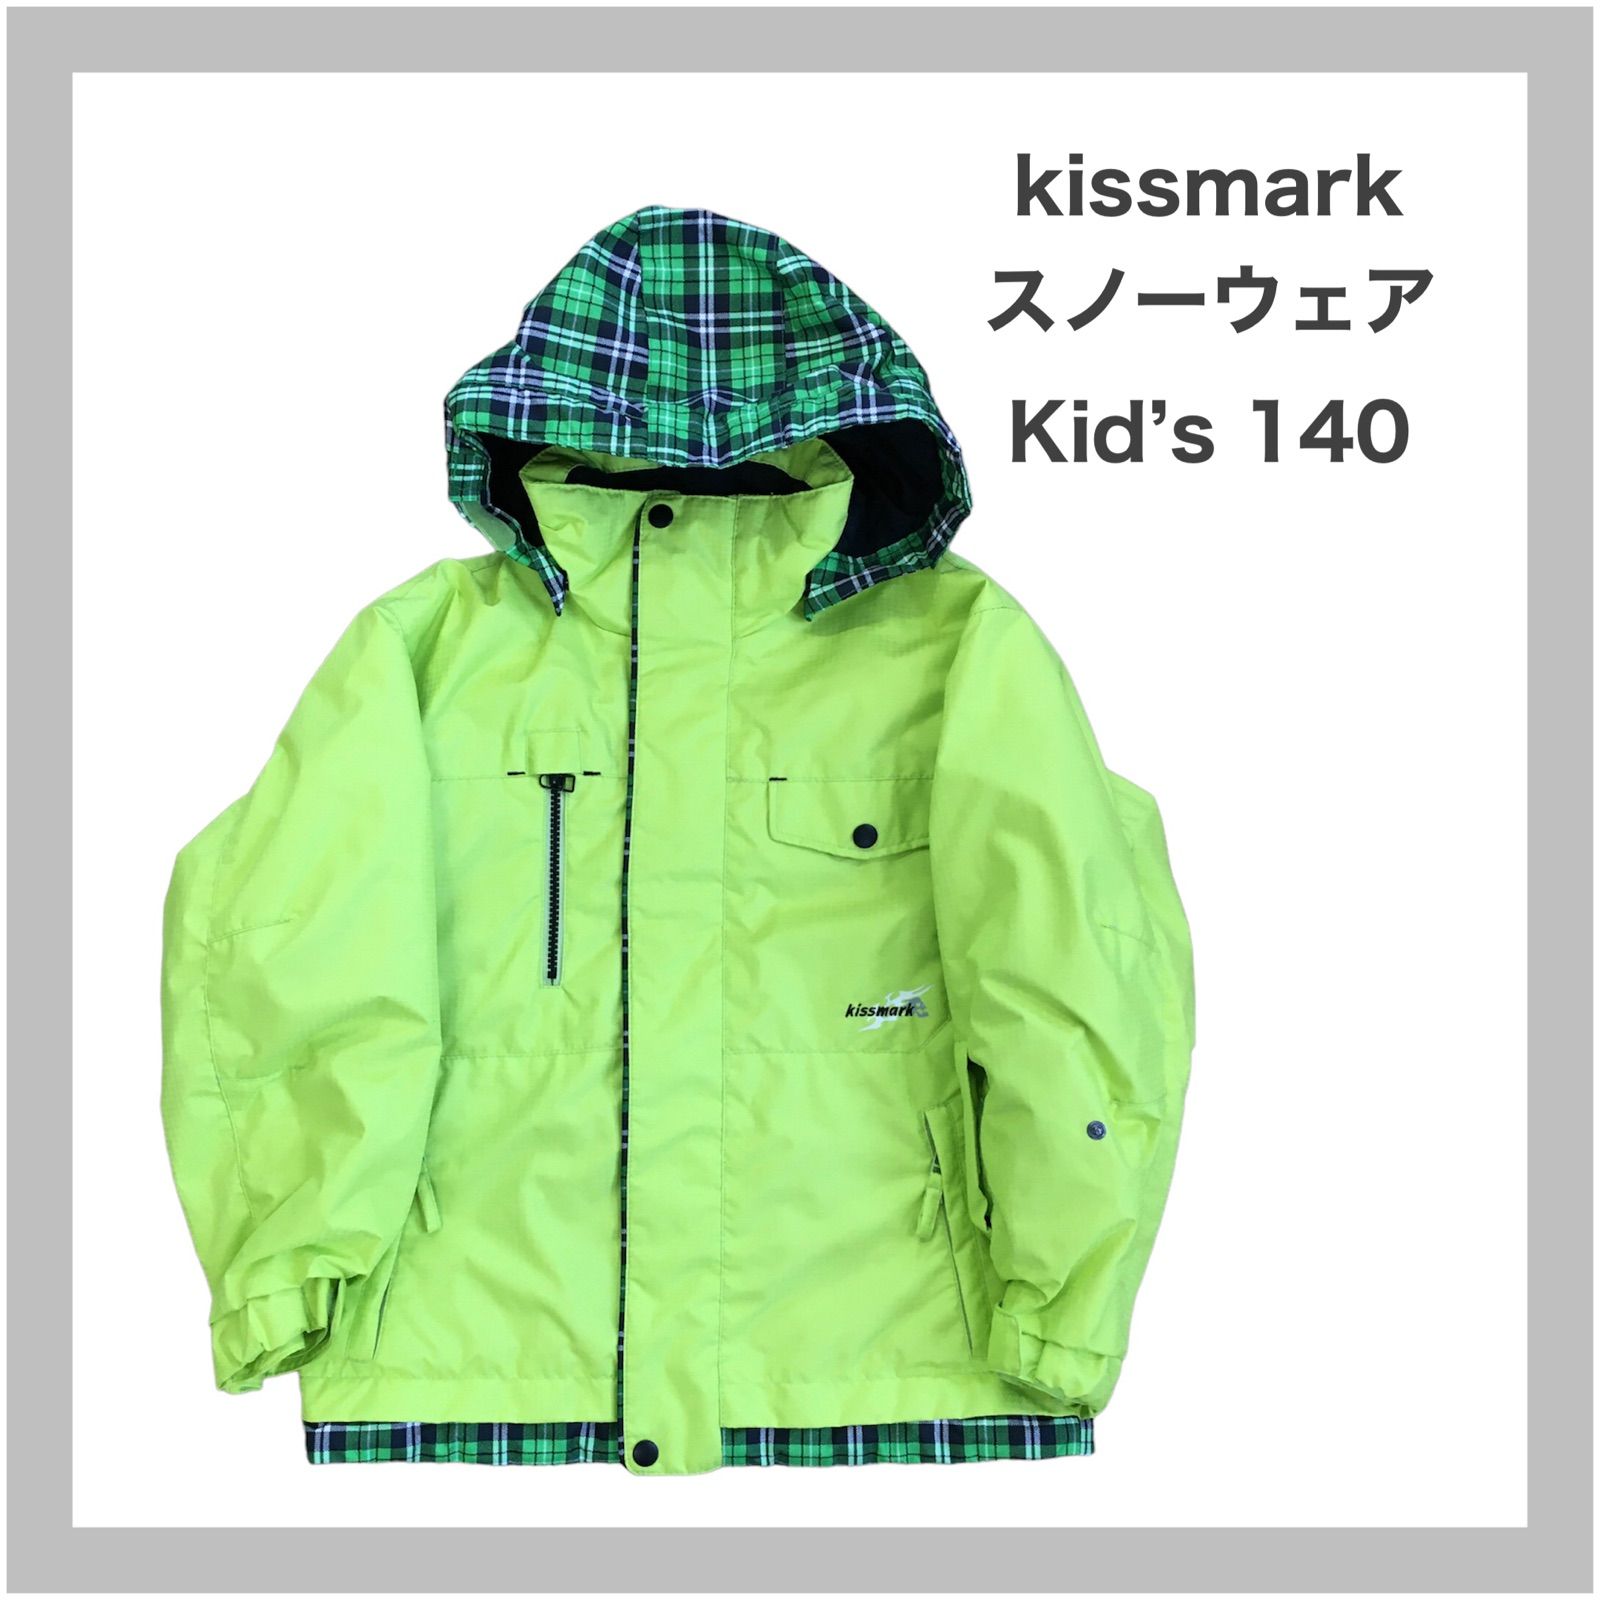 Kissmark キスマーク スノボウェア スキーウエア スノーボード 総柄 S